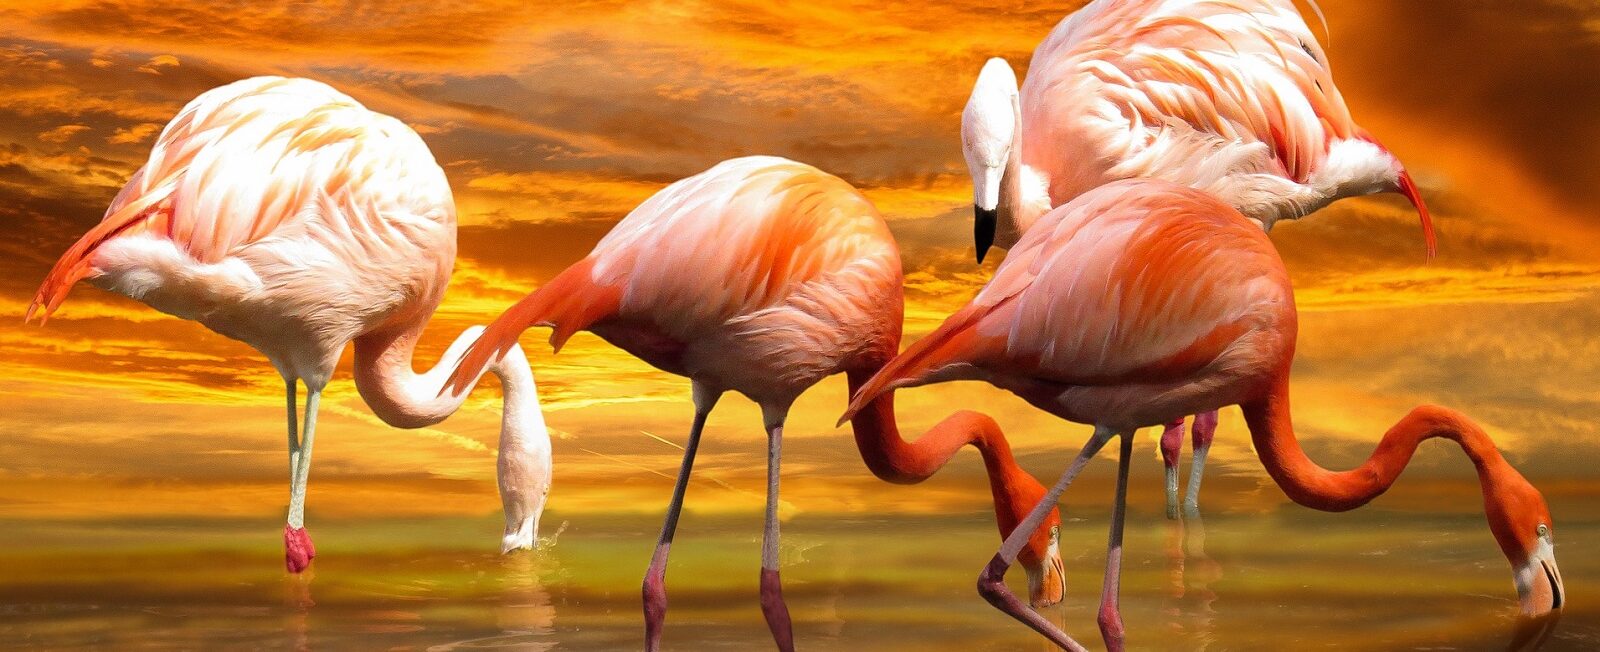 Quienes somos - 4 flamingos